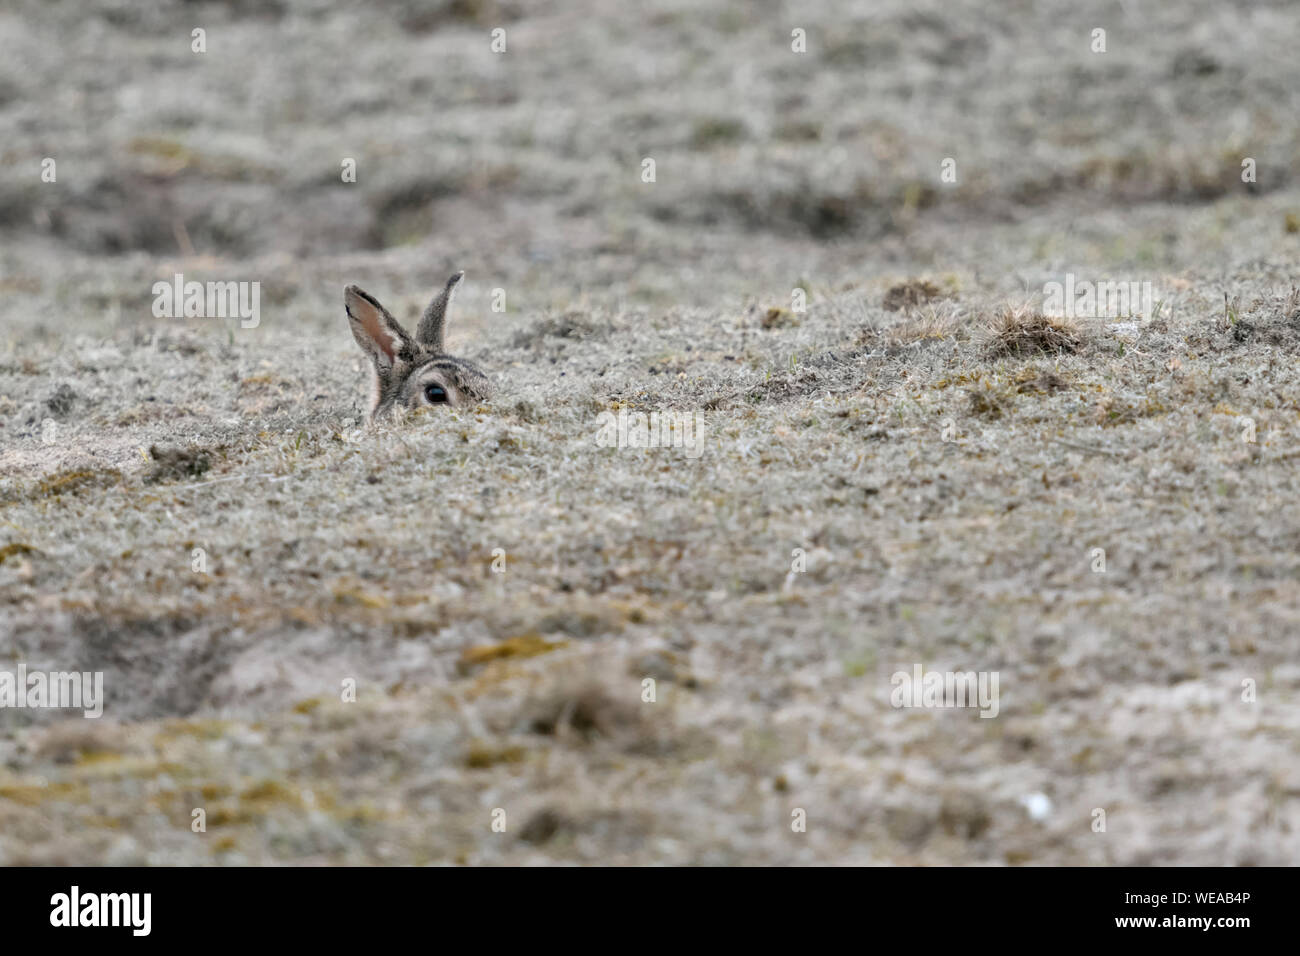 Lapin européen / Wildkaninchen ( Oryctolagus cuniculus ) siégeant à trou de lapin, regardant attentivement, peeking out de son terrier, l'air drôle, de la faune Banque D'Images